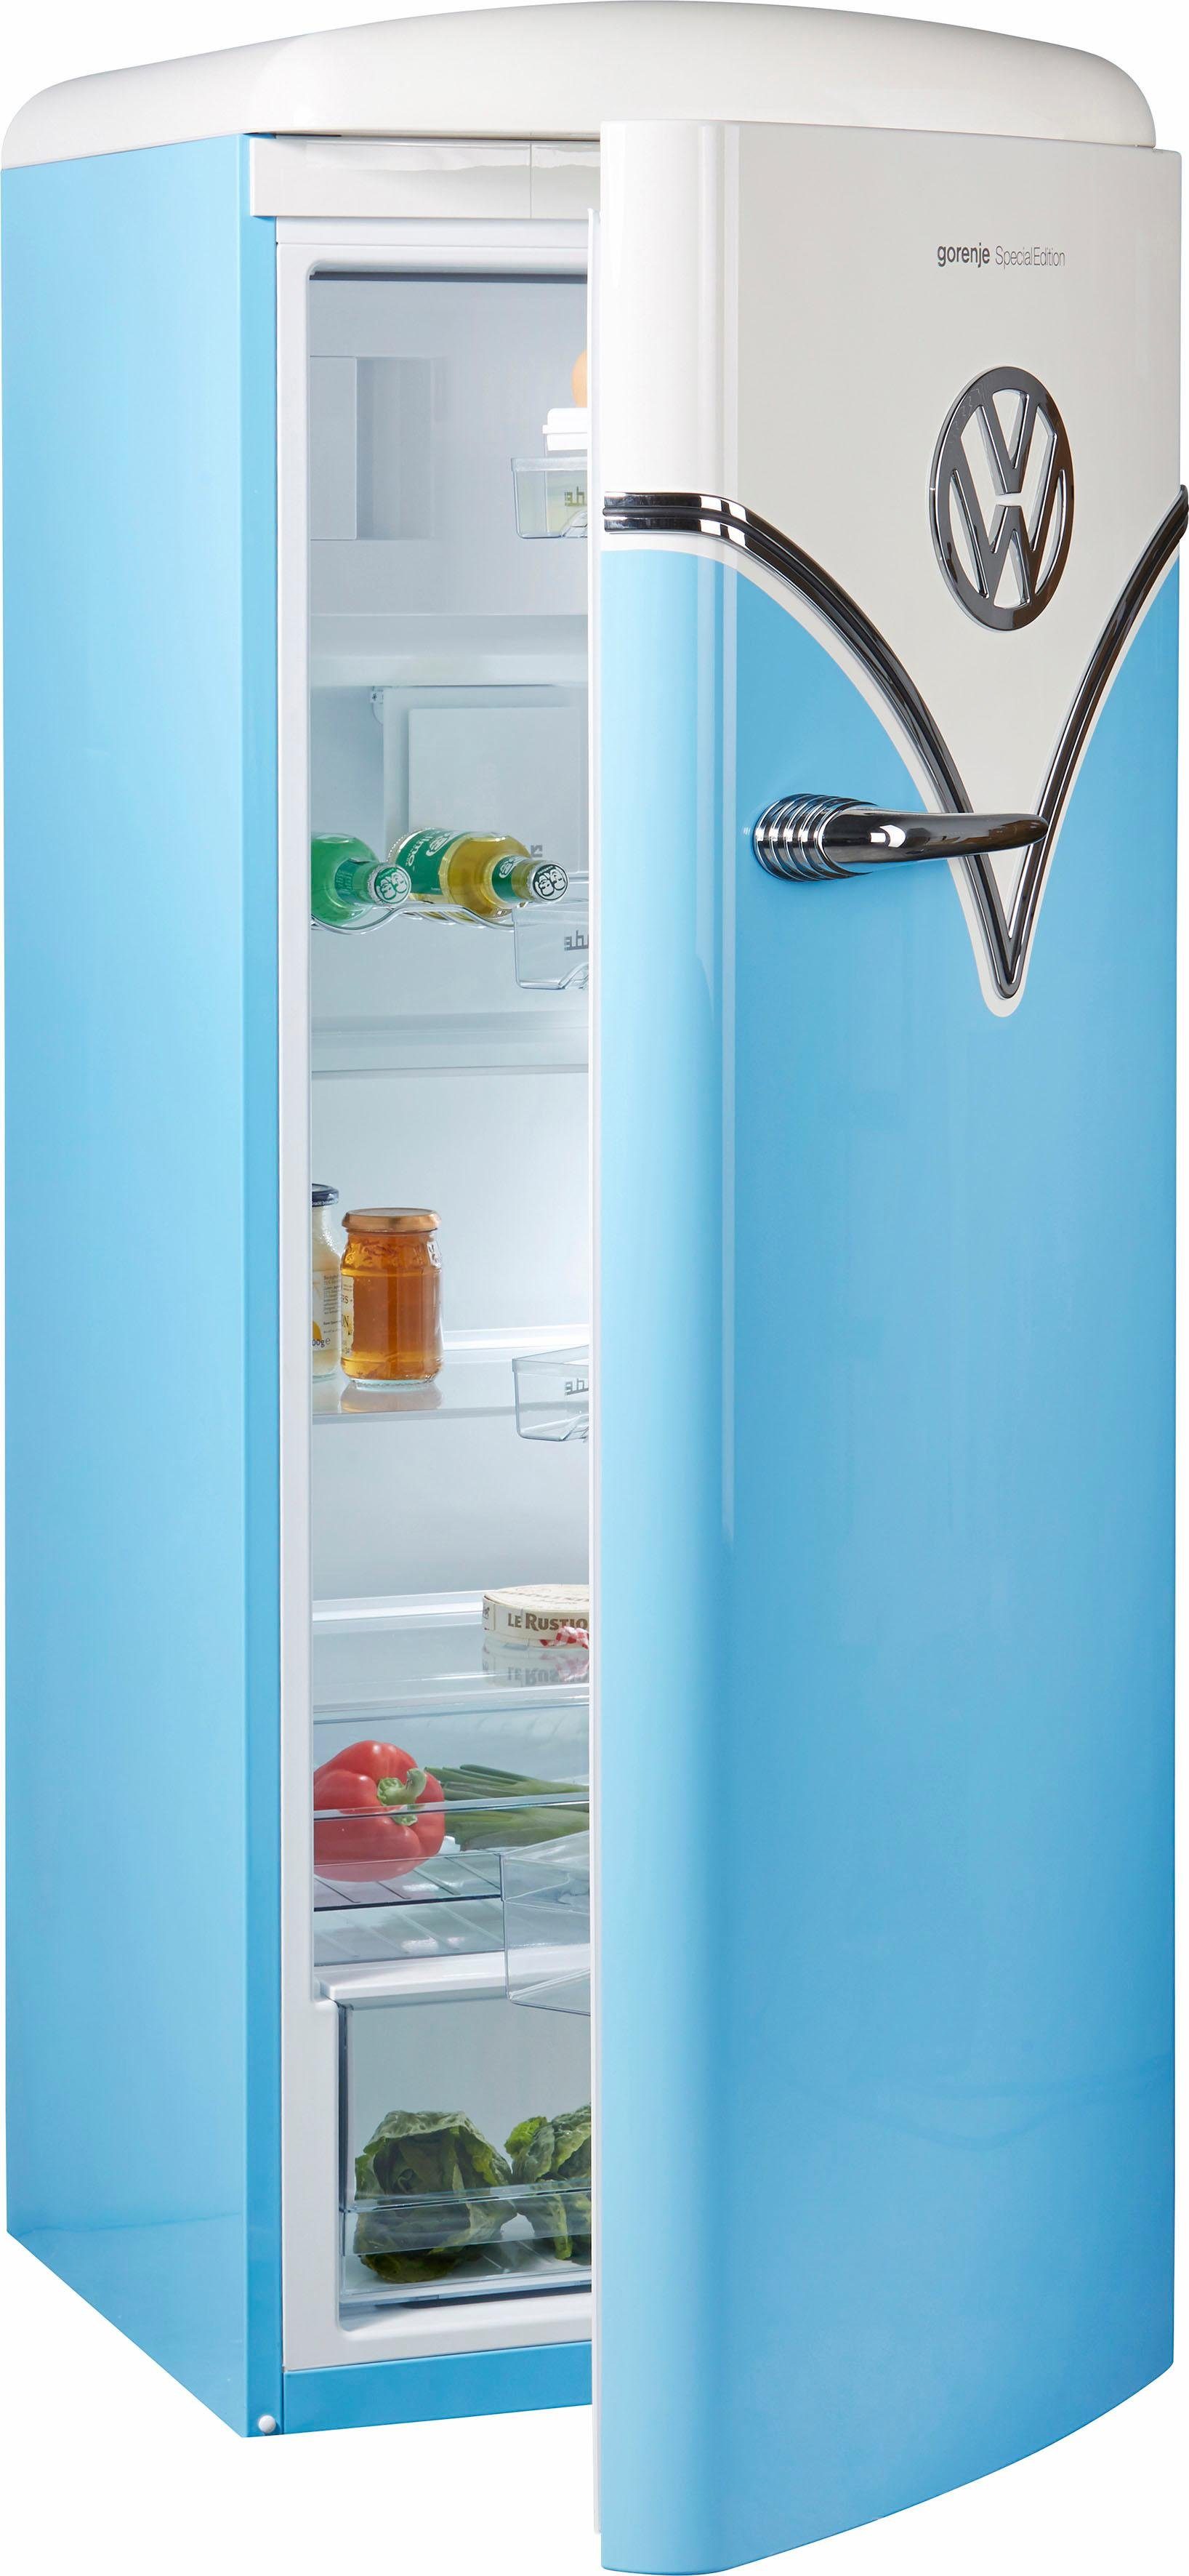 Bunten Kühlschrank online kaufen » Kühlschrank farbig | OTTO